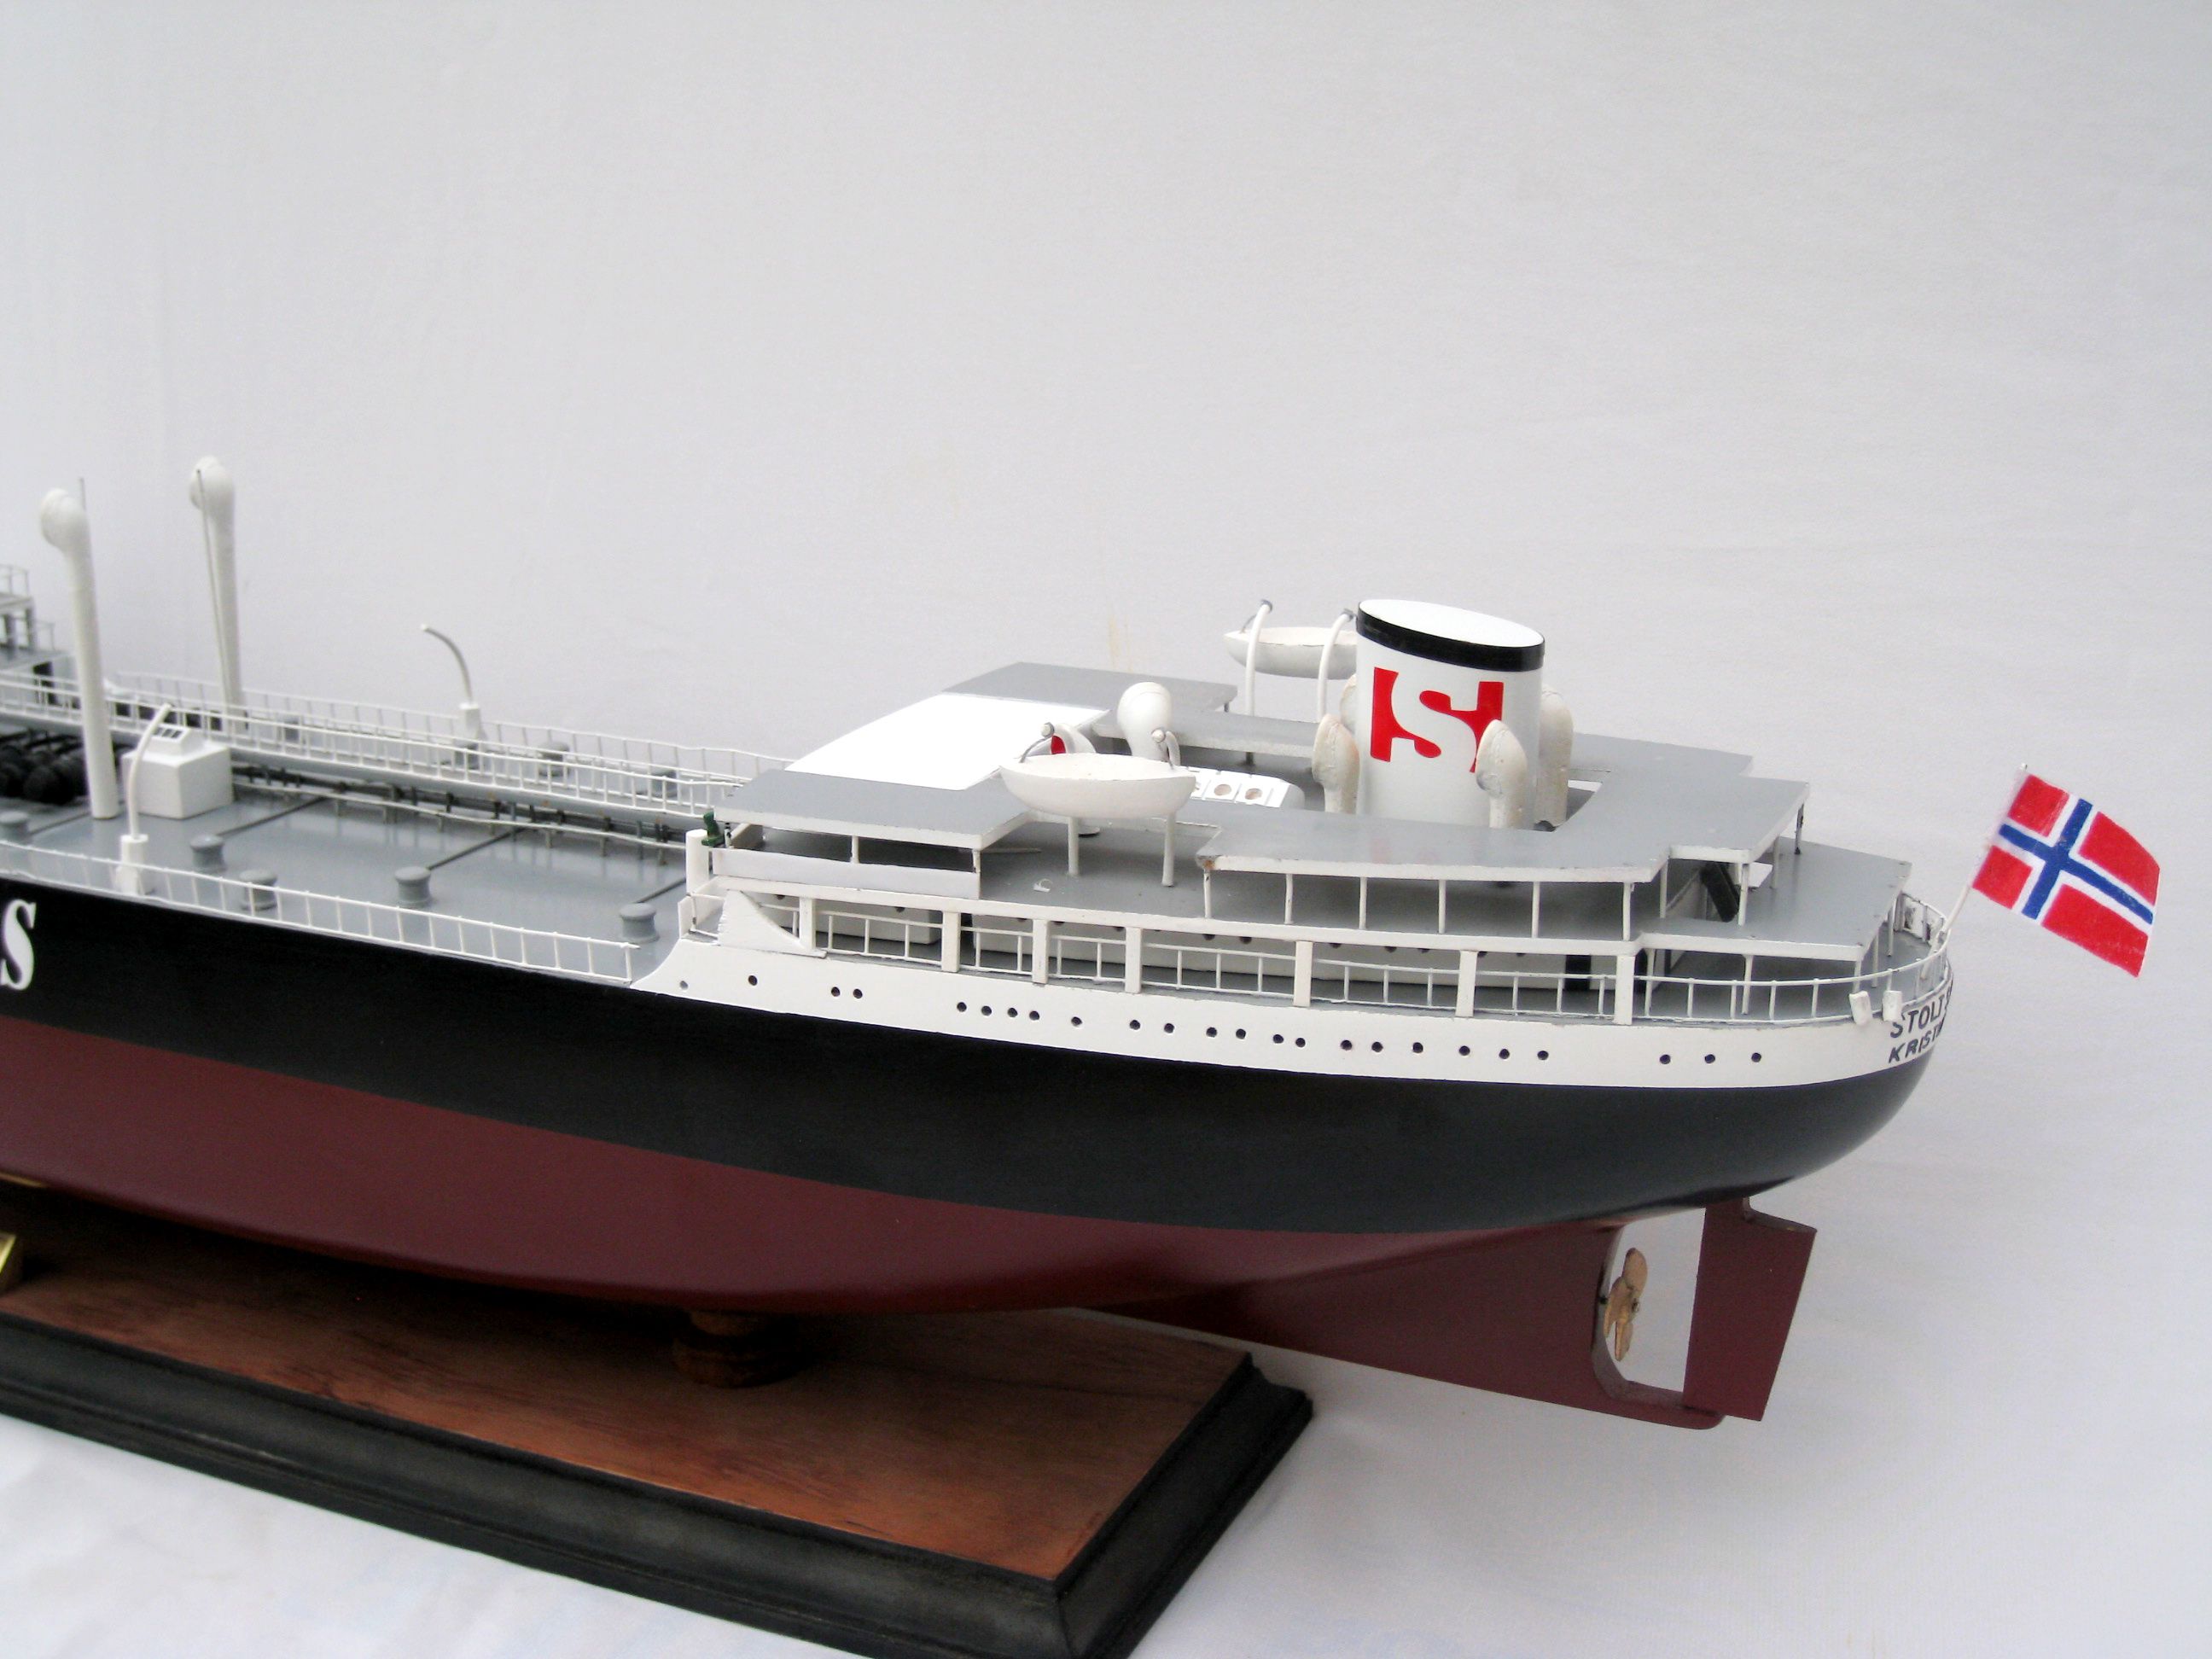 Stolt Sagona Wooden Model Ship - GN